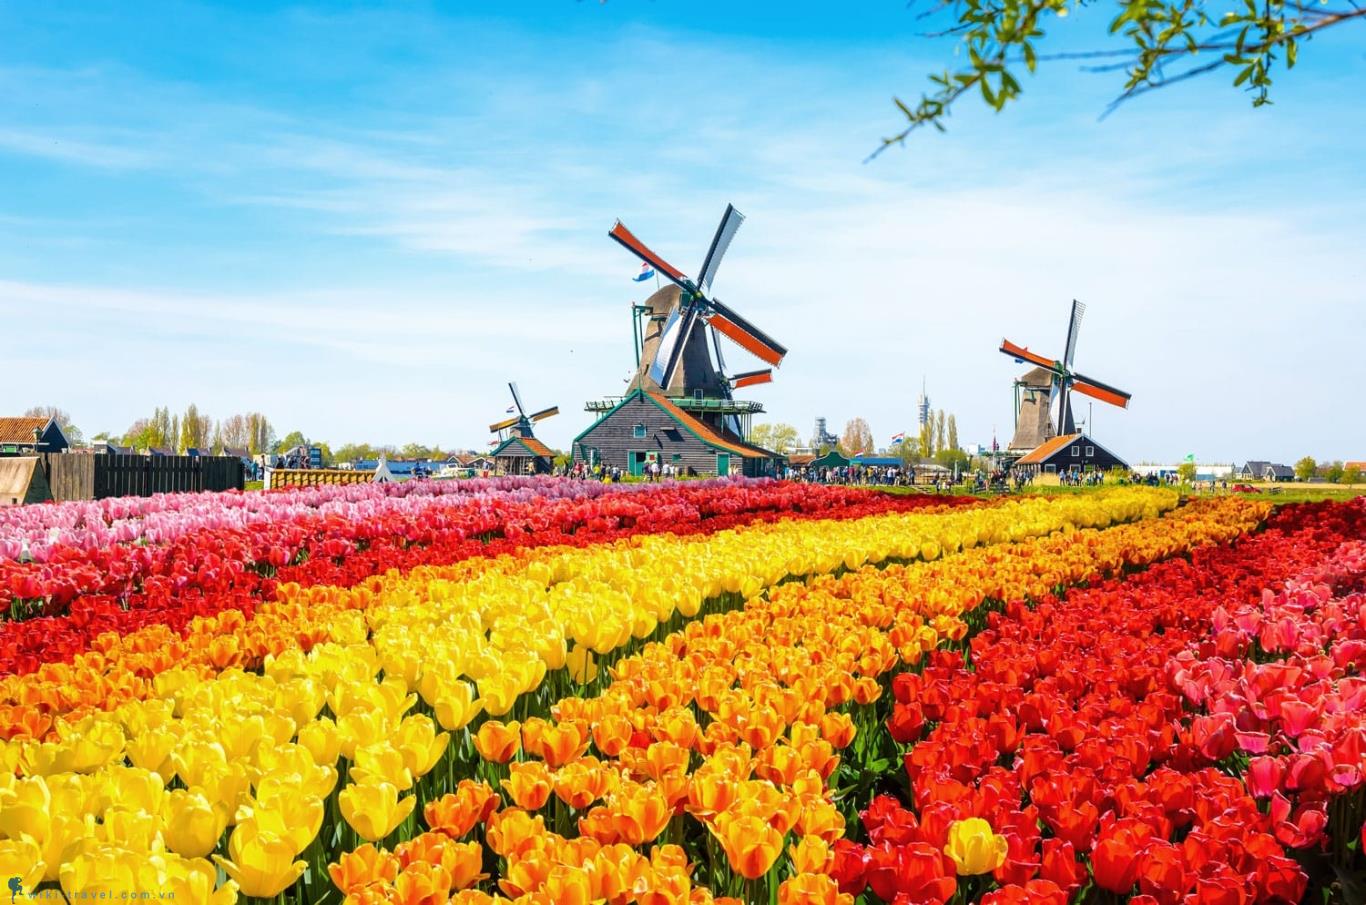 Hà Lan được mệnh danh là xứ sở muôn hoa, nổi tiếng với những cánh đồng hoa tulip rực rỡ sắc màu